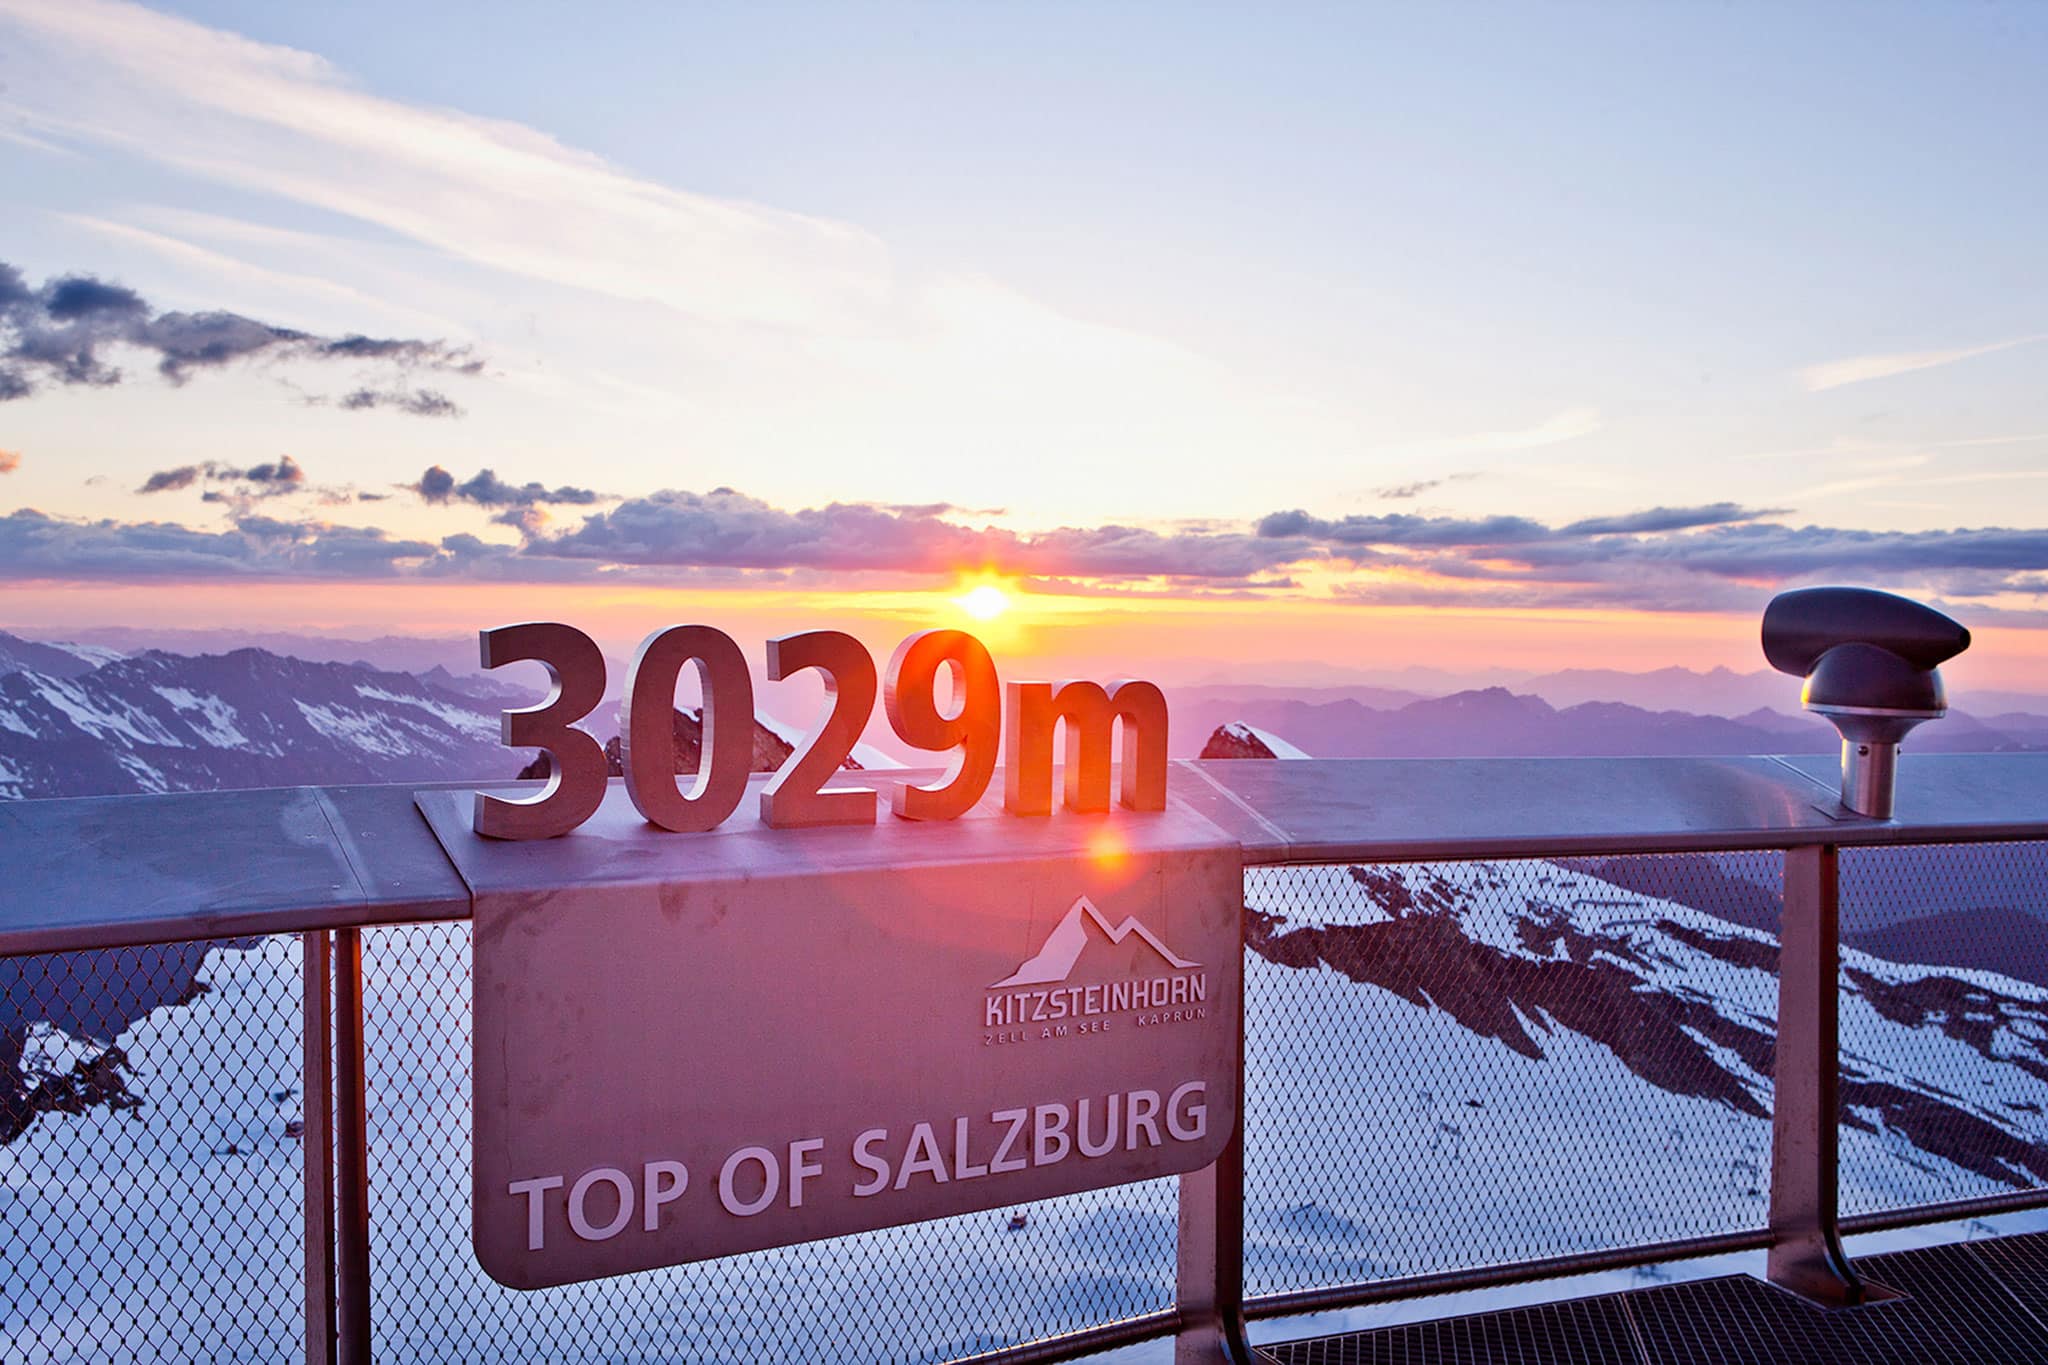 Die Aussichtsplatfrom Top of Salzburg